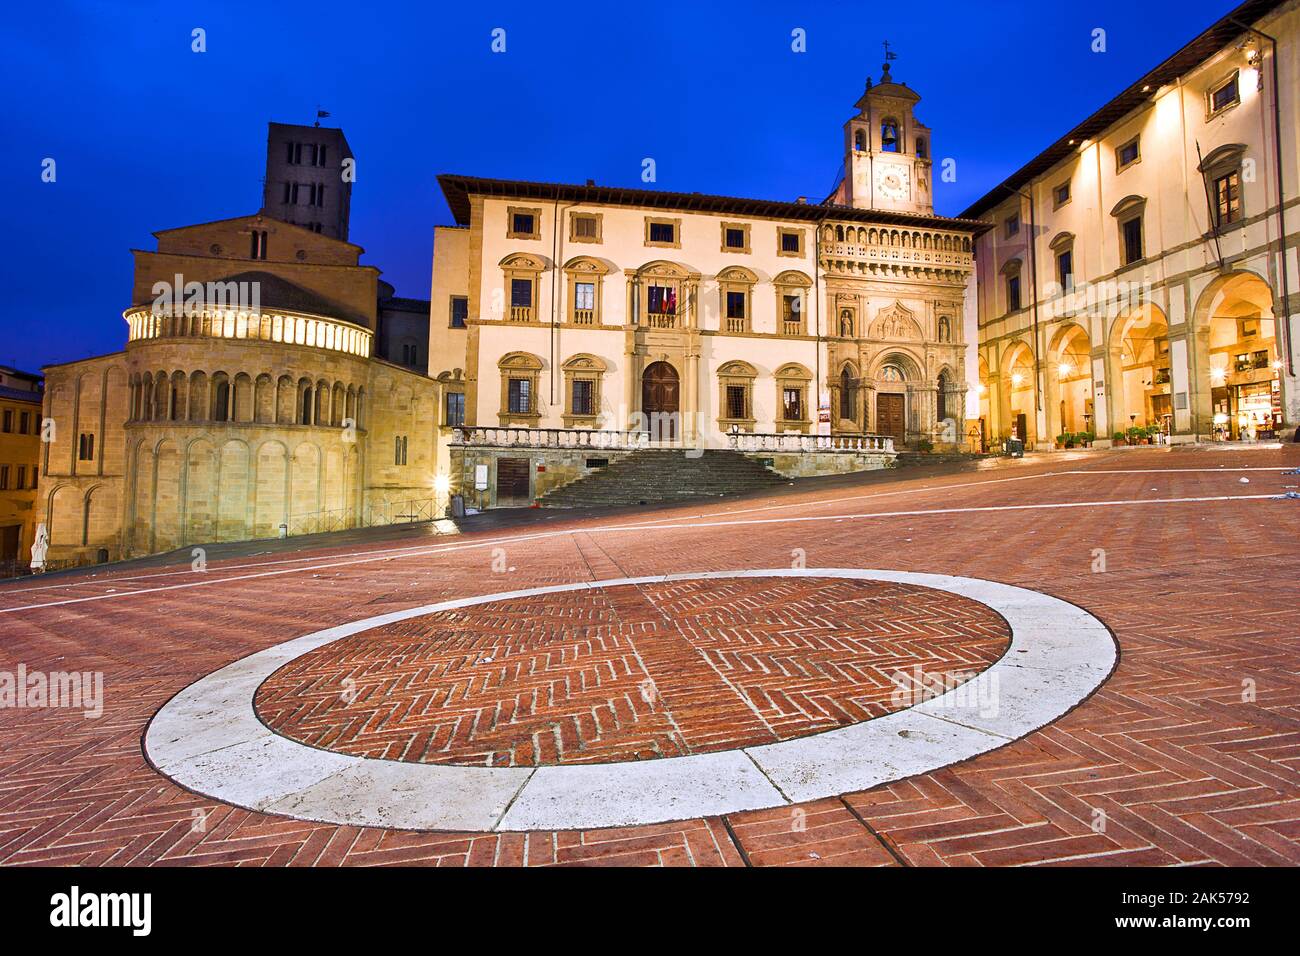 Arezzo : Piazza Grande mit Santa Maria della Pieve und Logge Vasari, am Abend, Toskana | utilisée dans le monde entier Banque D'Images